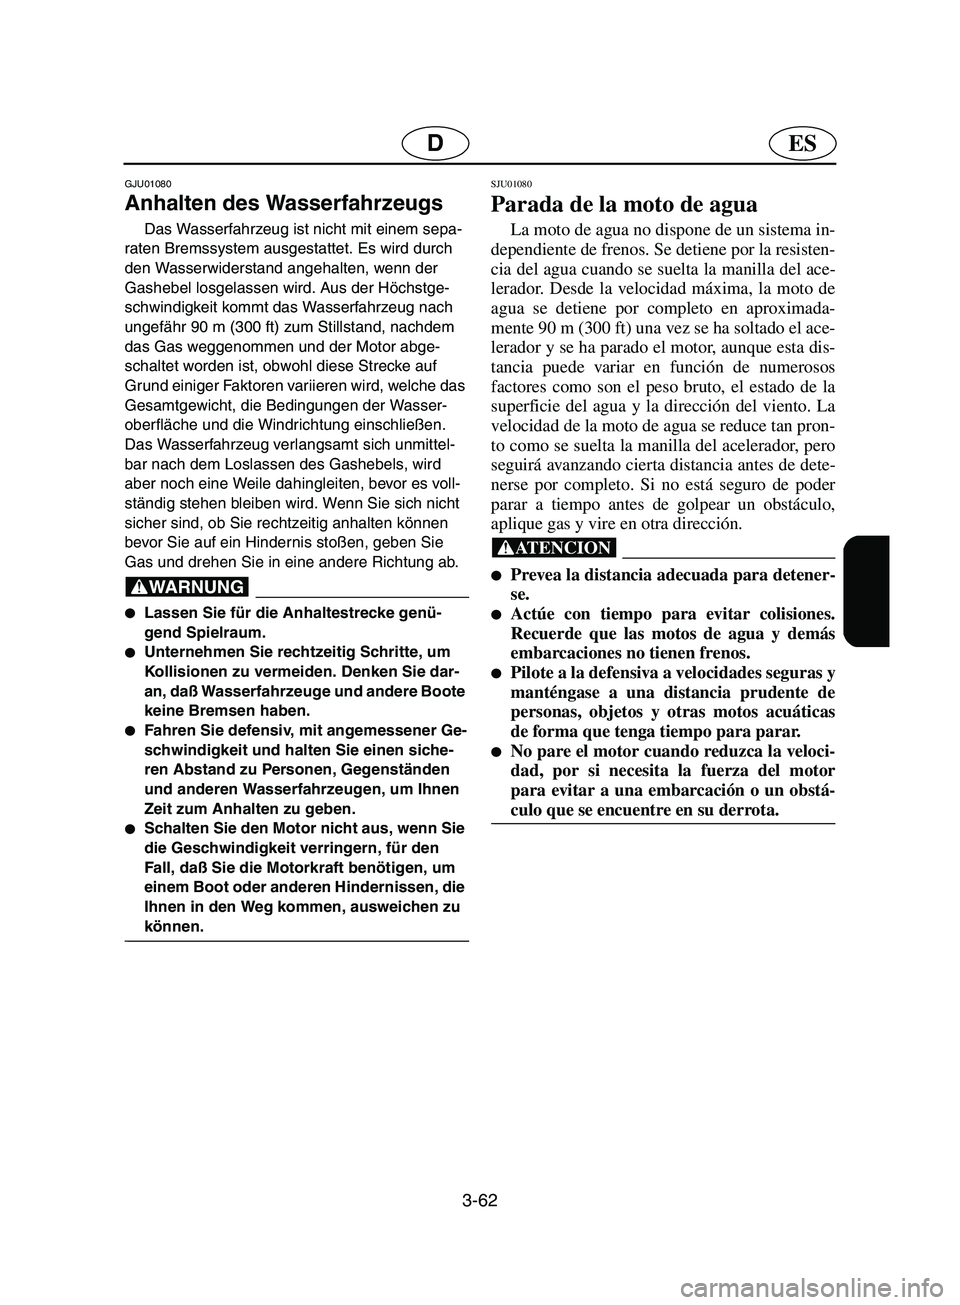 YAMAHA SUPERJET 2002  Notices Demploi (in French) 3-62
ESD
GJU01080 
Anhalten des Wasserfahrzeugs  
Das Wasserfahrzeug ist nicht mit einem sepa-
raten Bremssystem ausgestattet. Es wird durch 
den Wasserwiderstand angehalten, wenn der 
Gashebel losgel